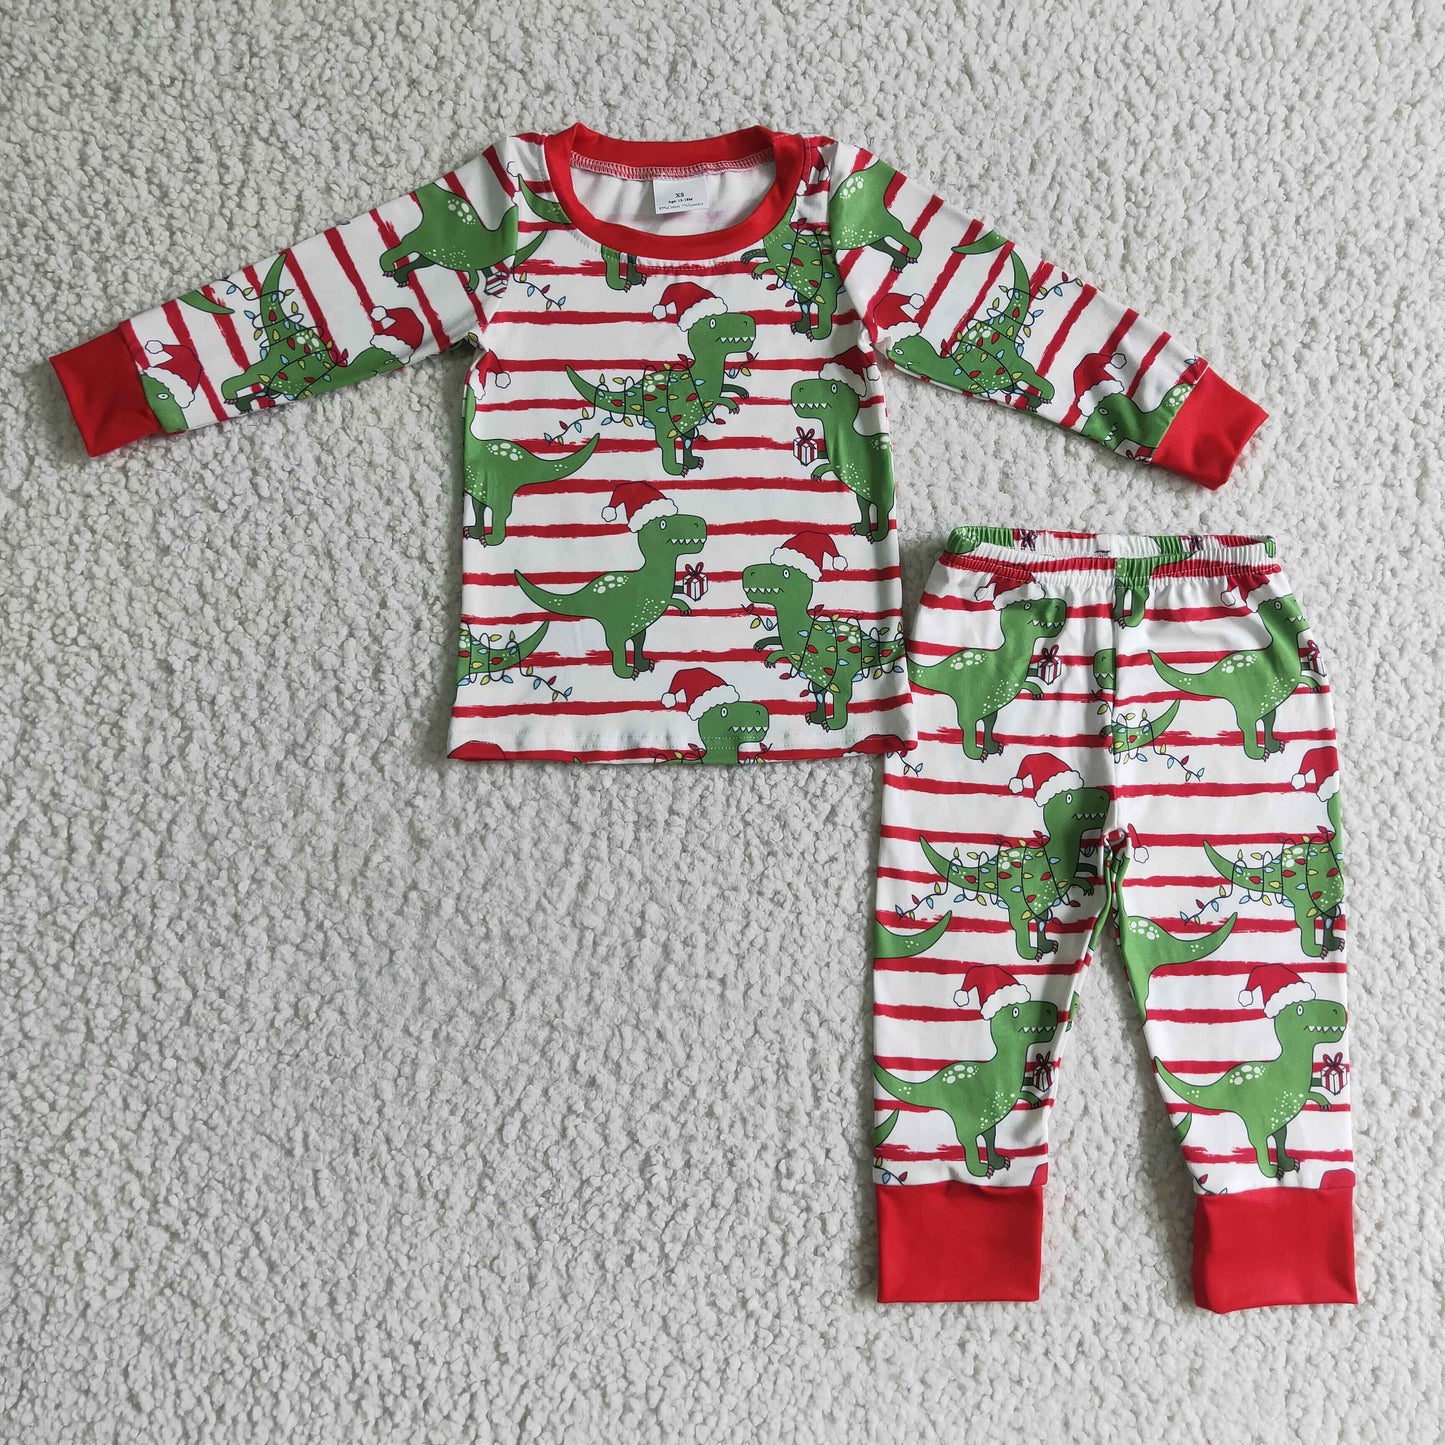 Dinosaur stripe kids boy Christmas pajamas